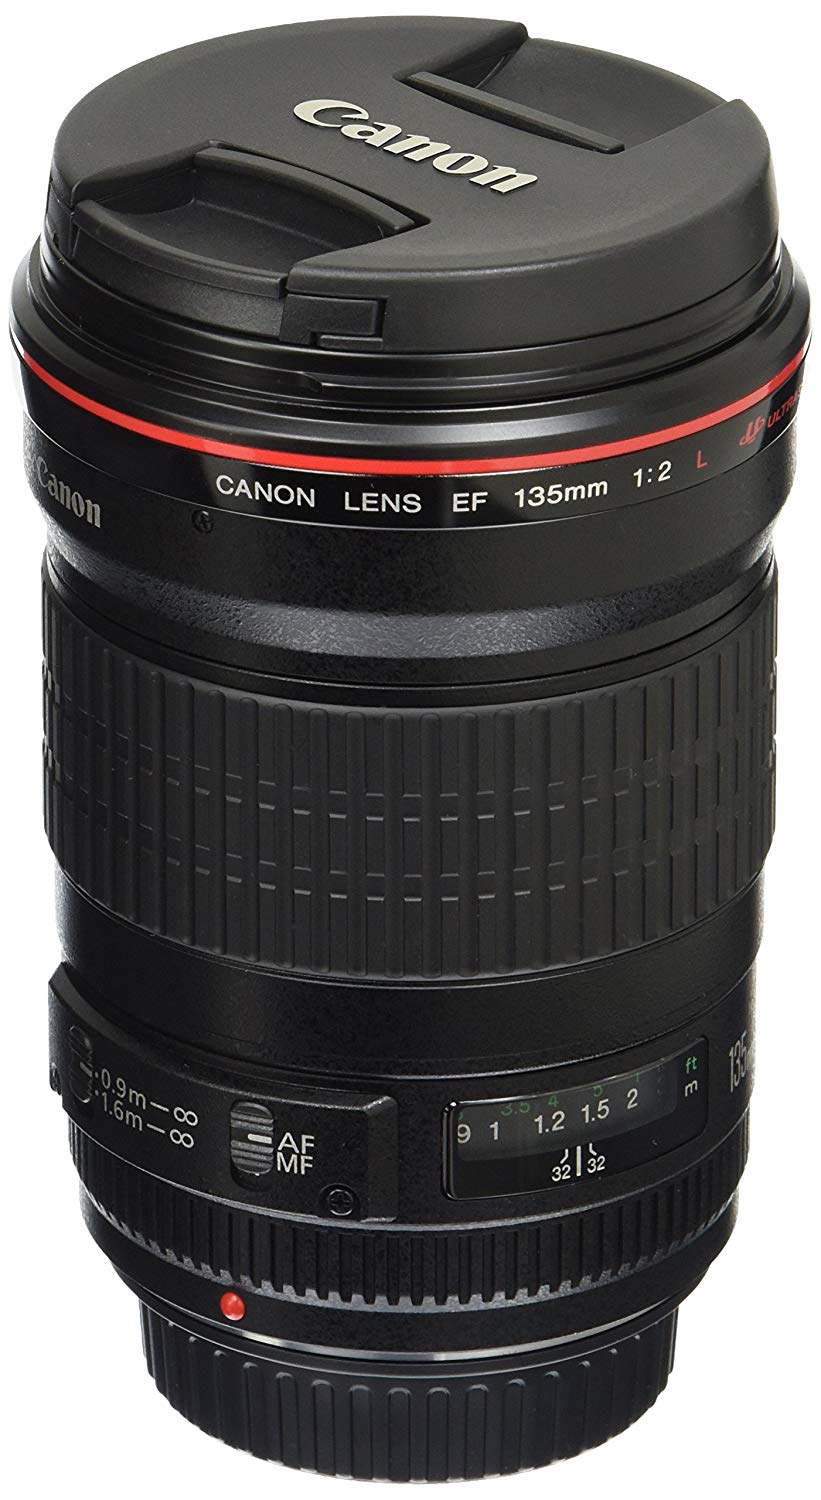 Canon 一眼レフカメラ用EF135mm f / 2LUSMレンズ-修正済み...